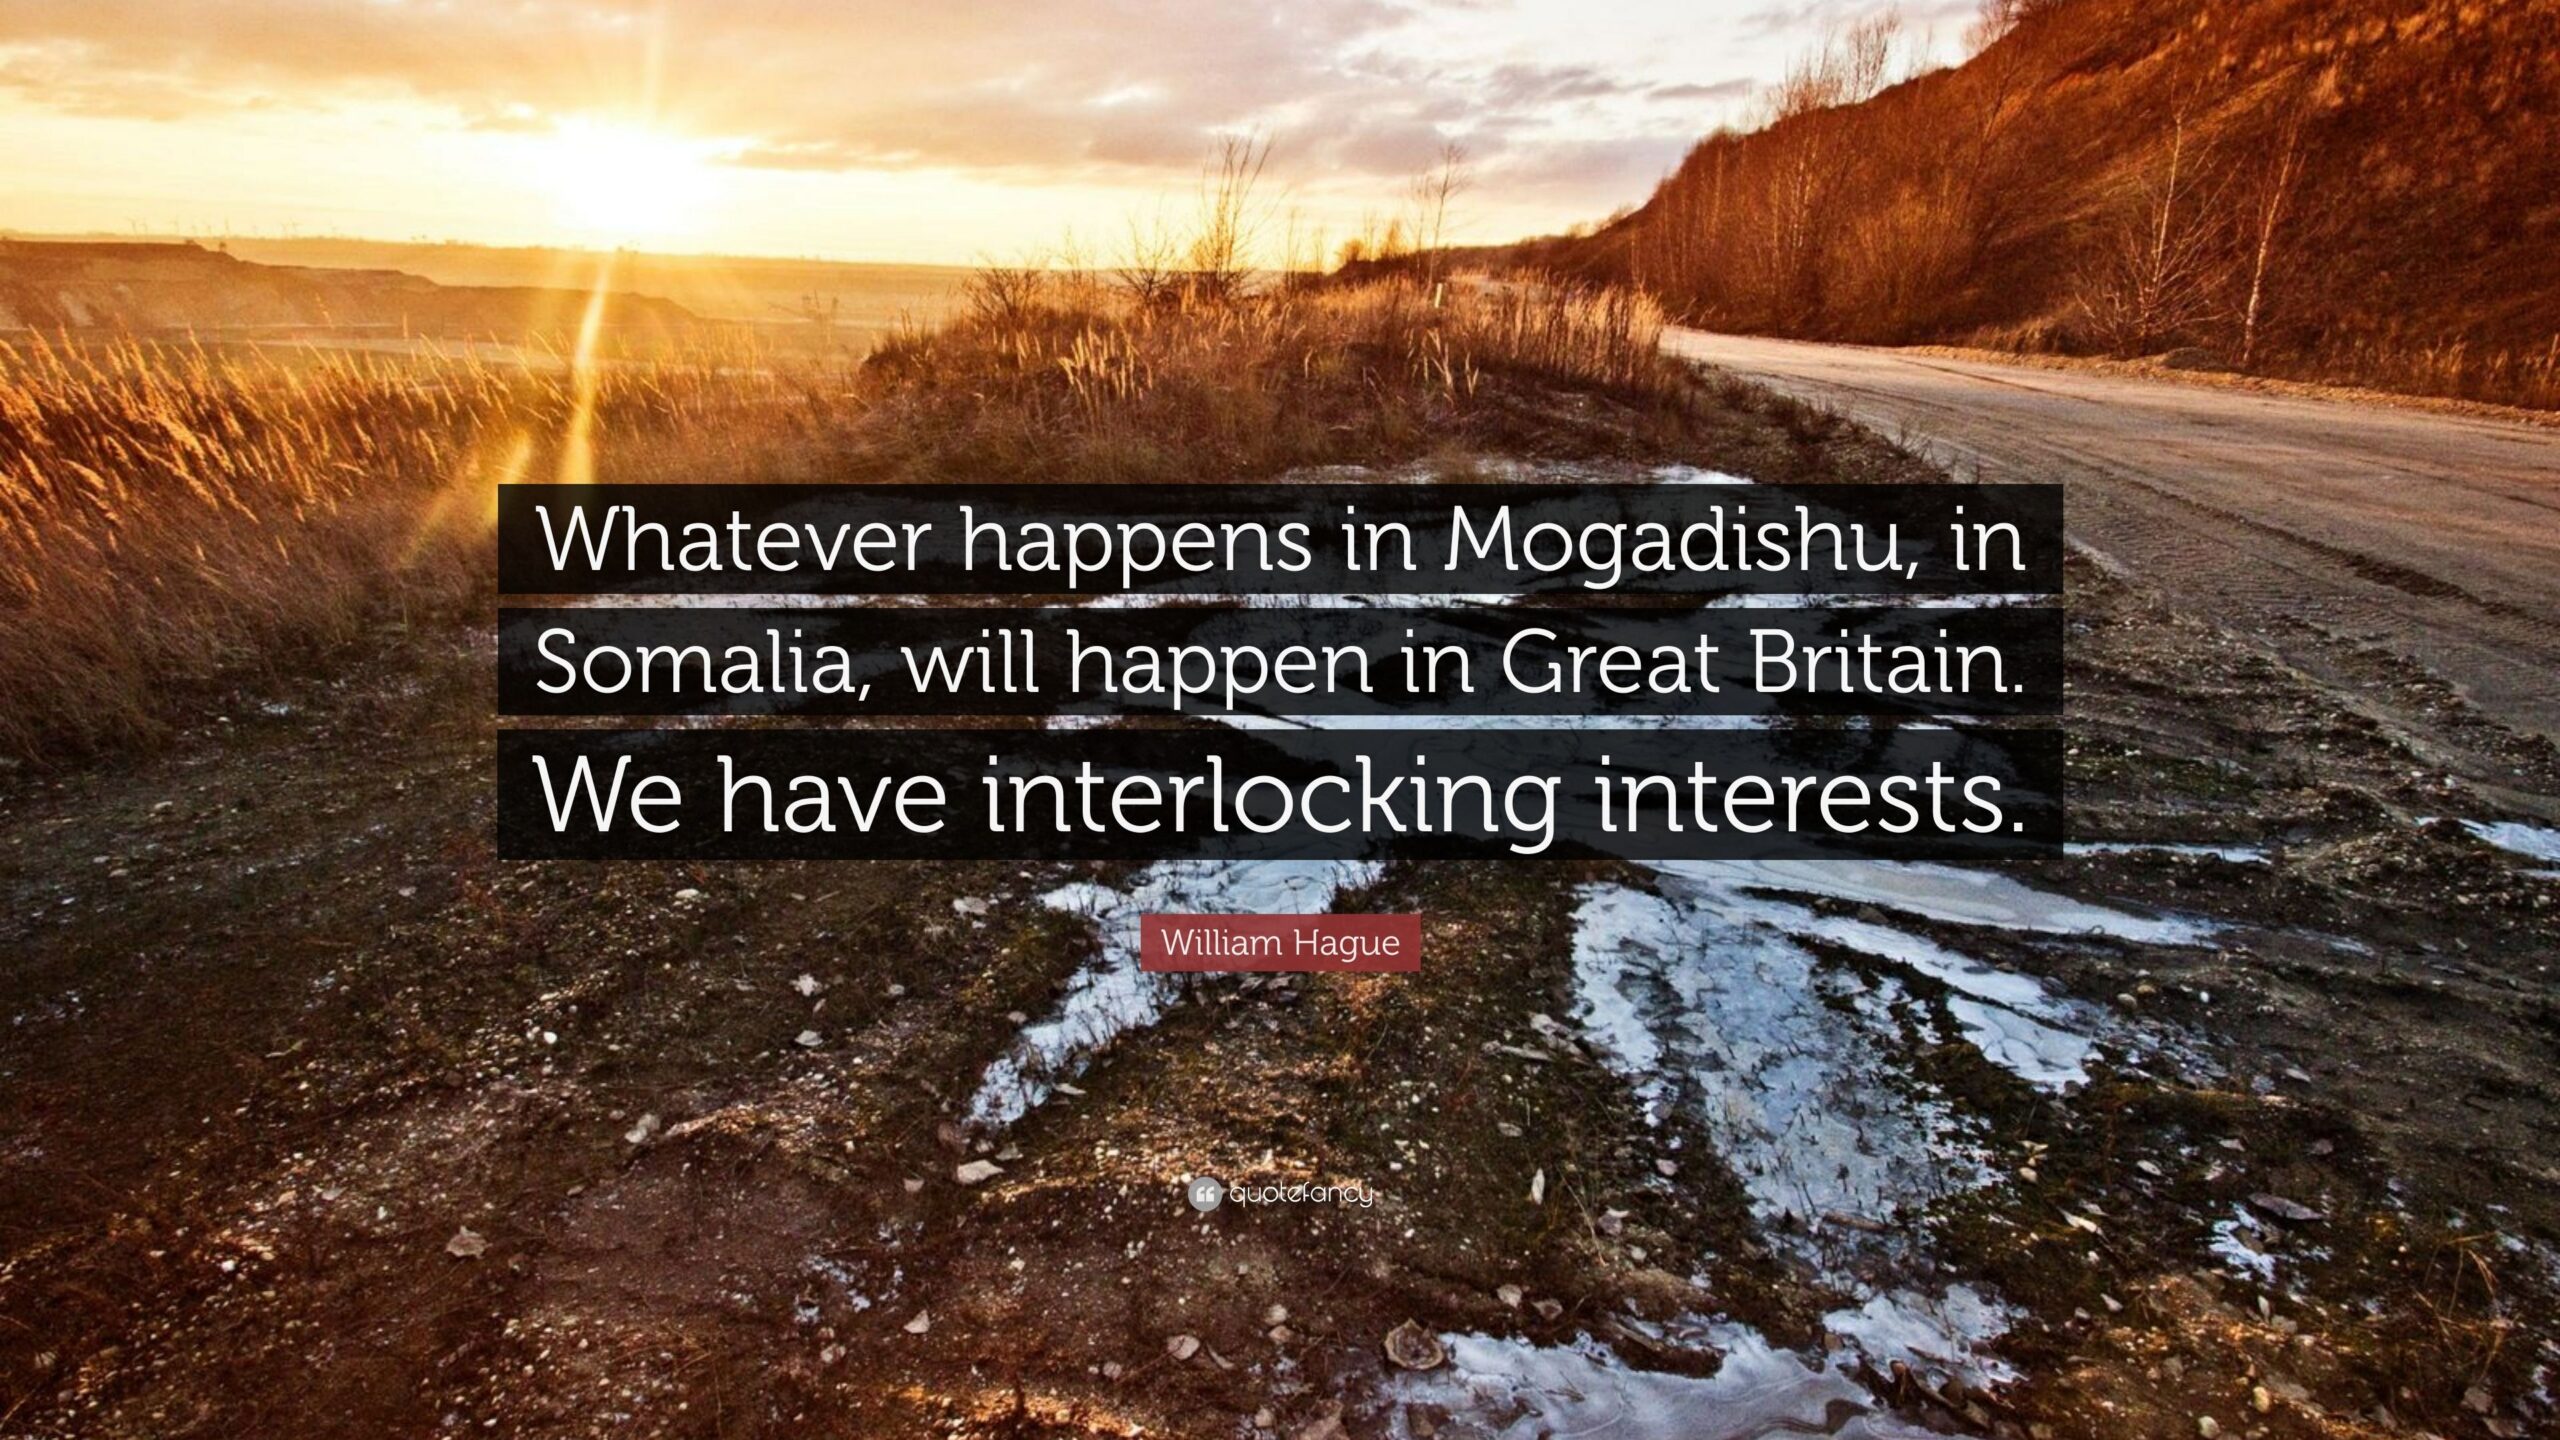 William Hague Quote “Whatever happens in Mogadishu, in Somalia